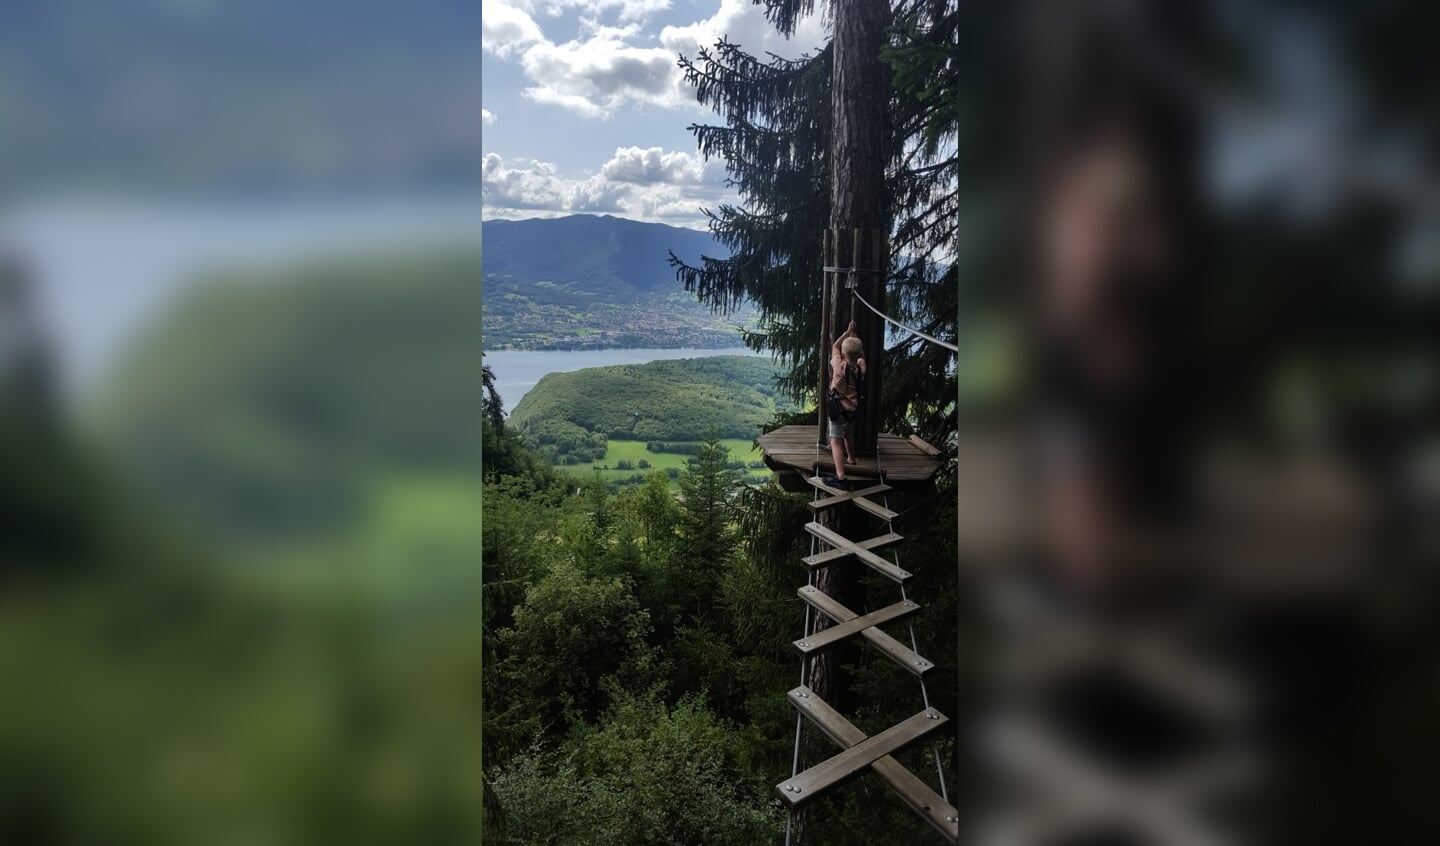 Sam aan het klimmen met prachtig uitzicht over het meer van Annecy. Familie Lahaye